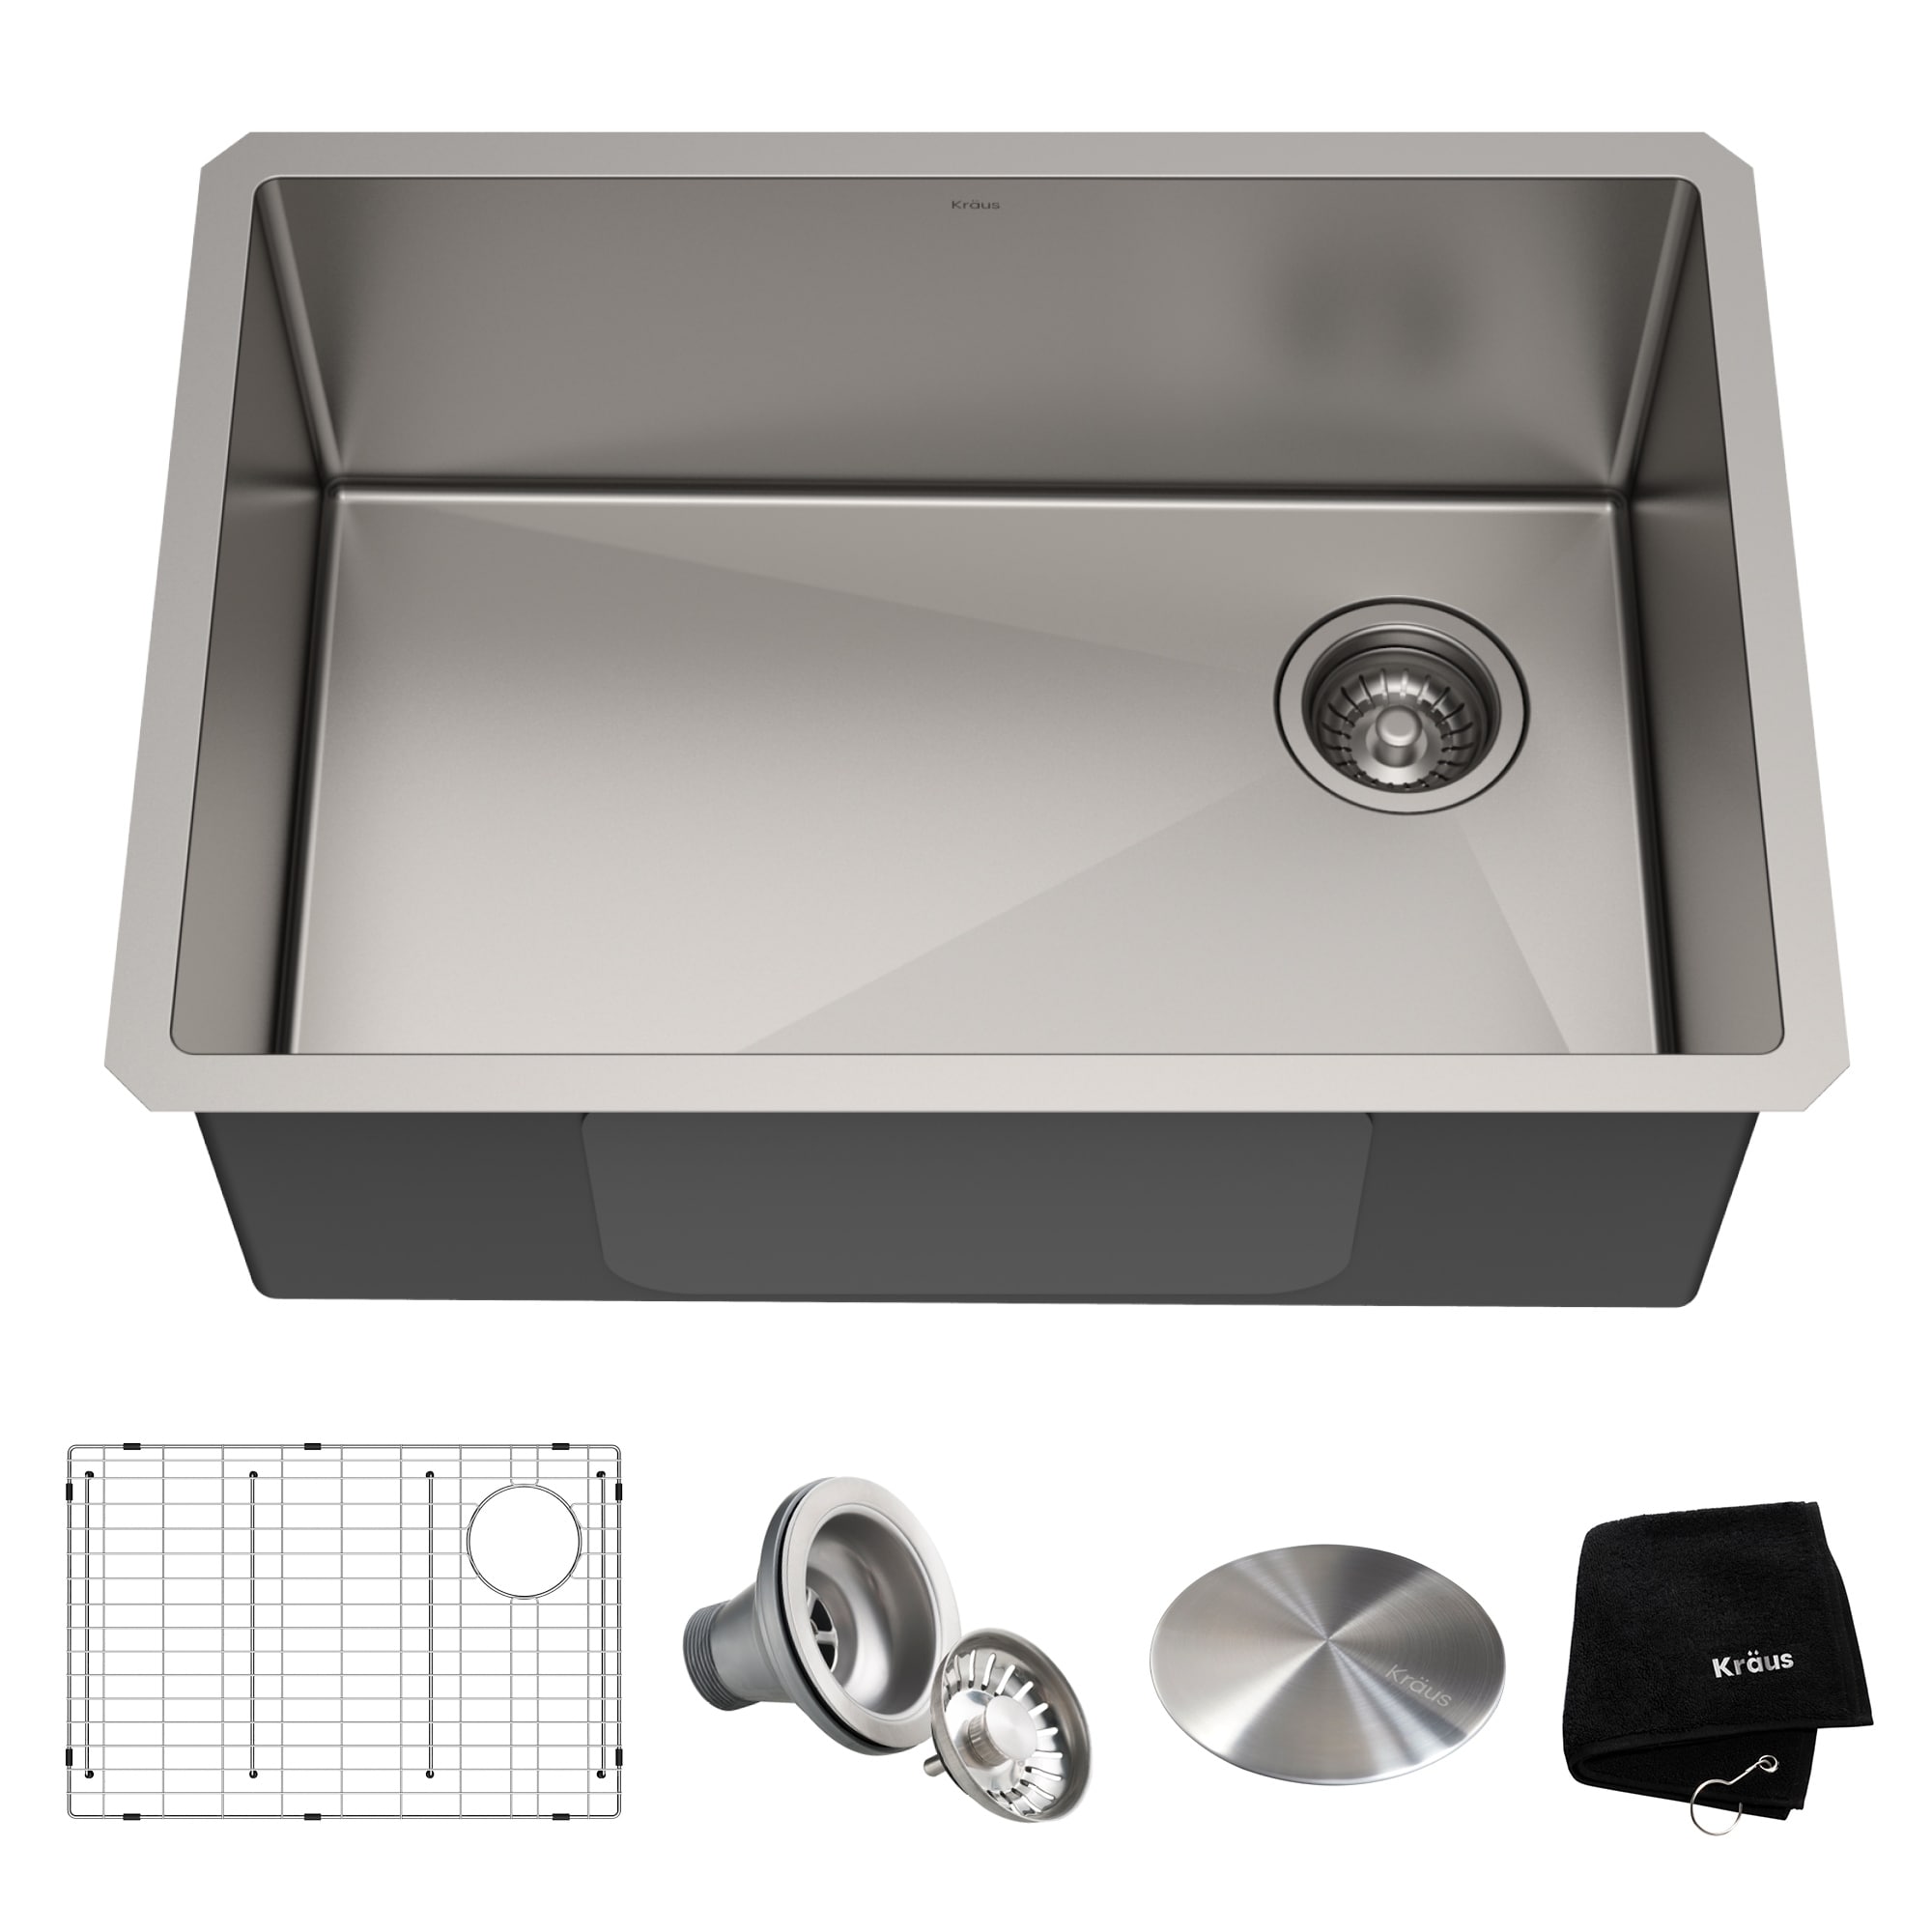 Kraus Standart Pro Stainless Steel 27 Inch Undermount Kitchen Sink Overstock 23561282